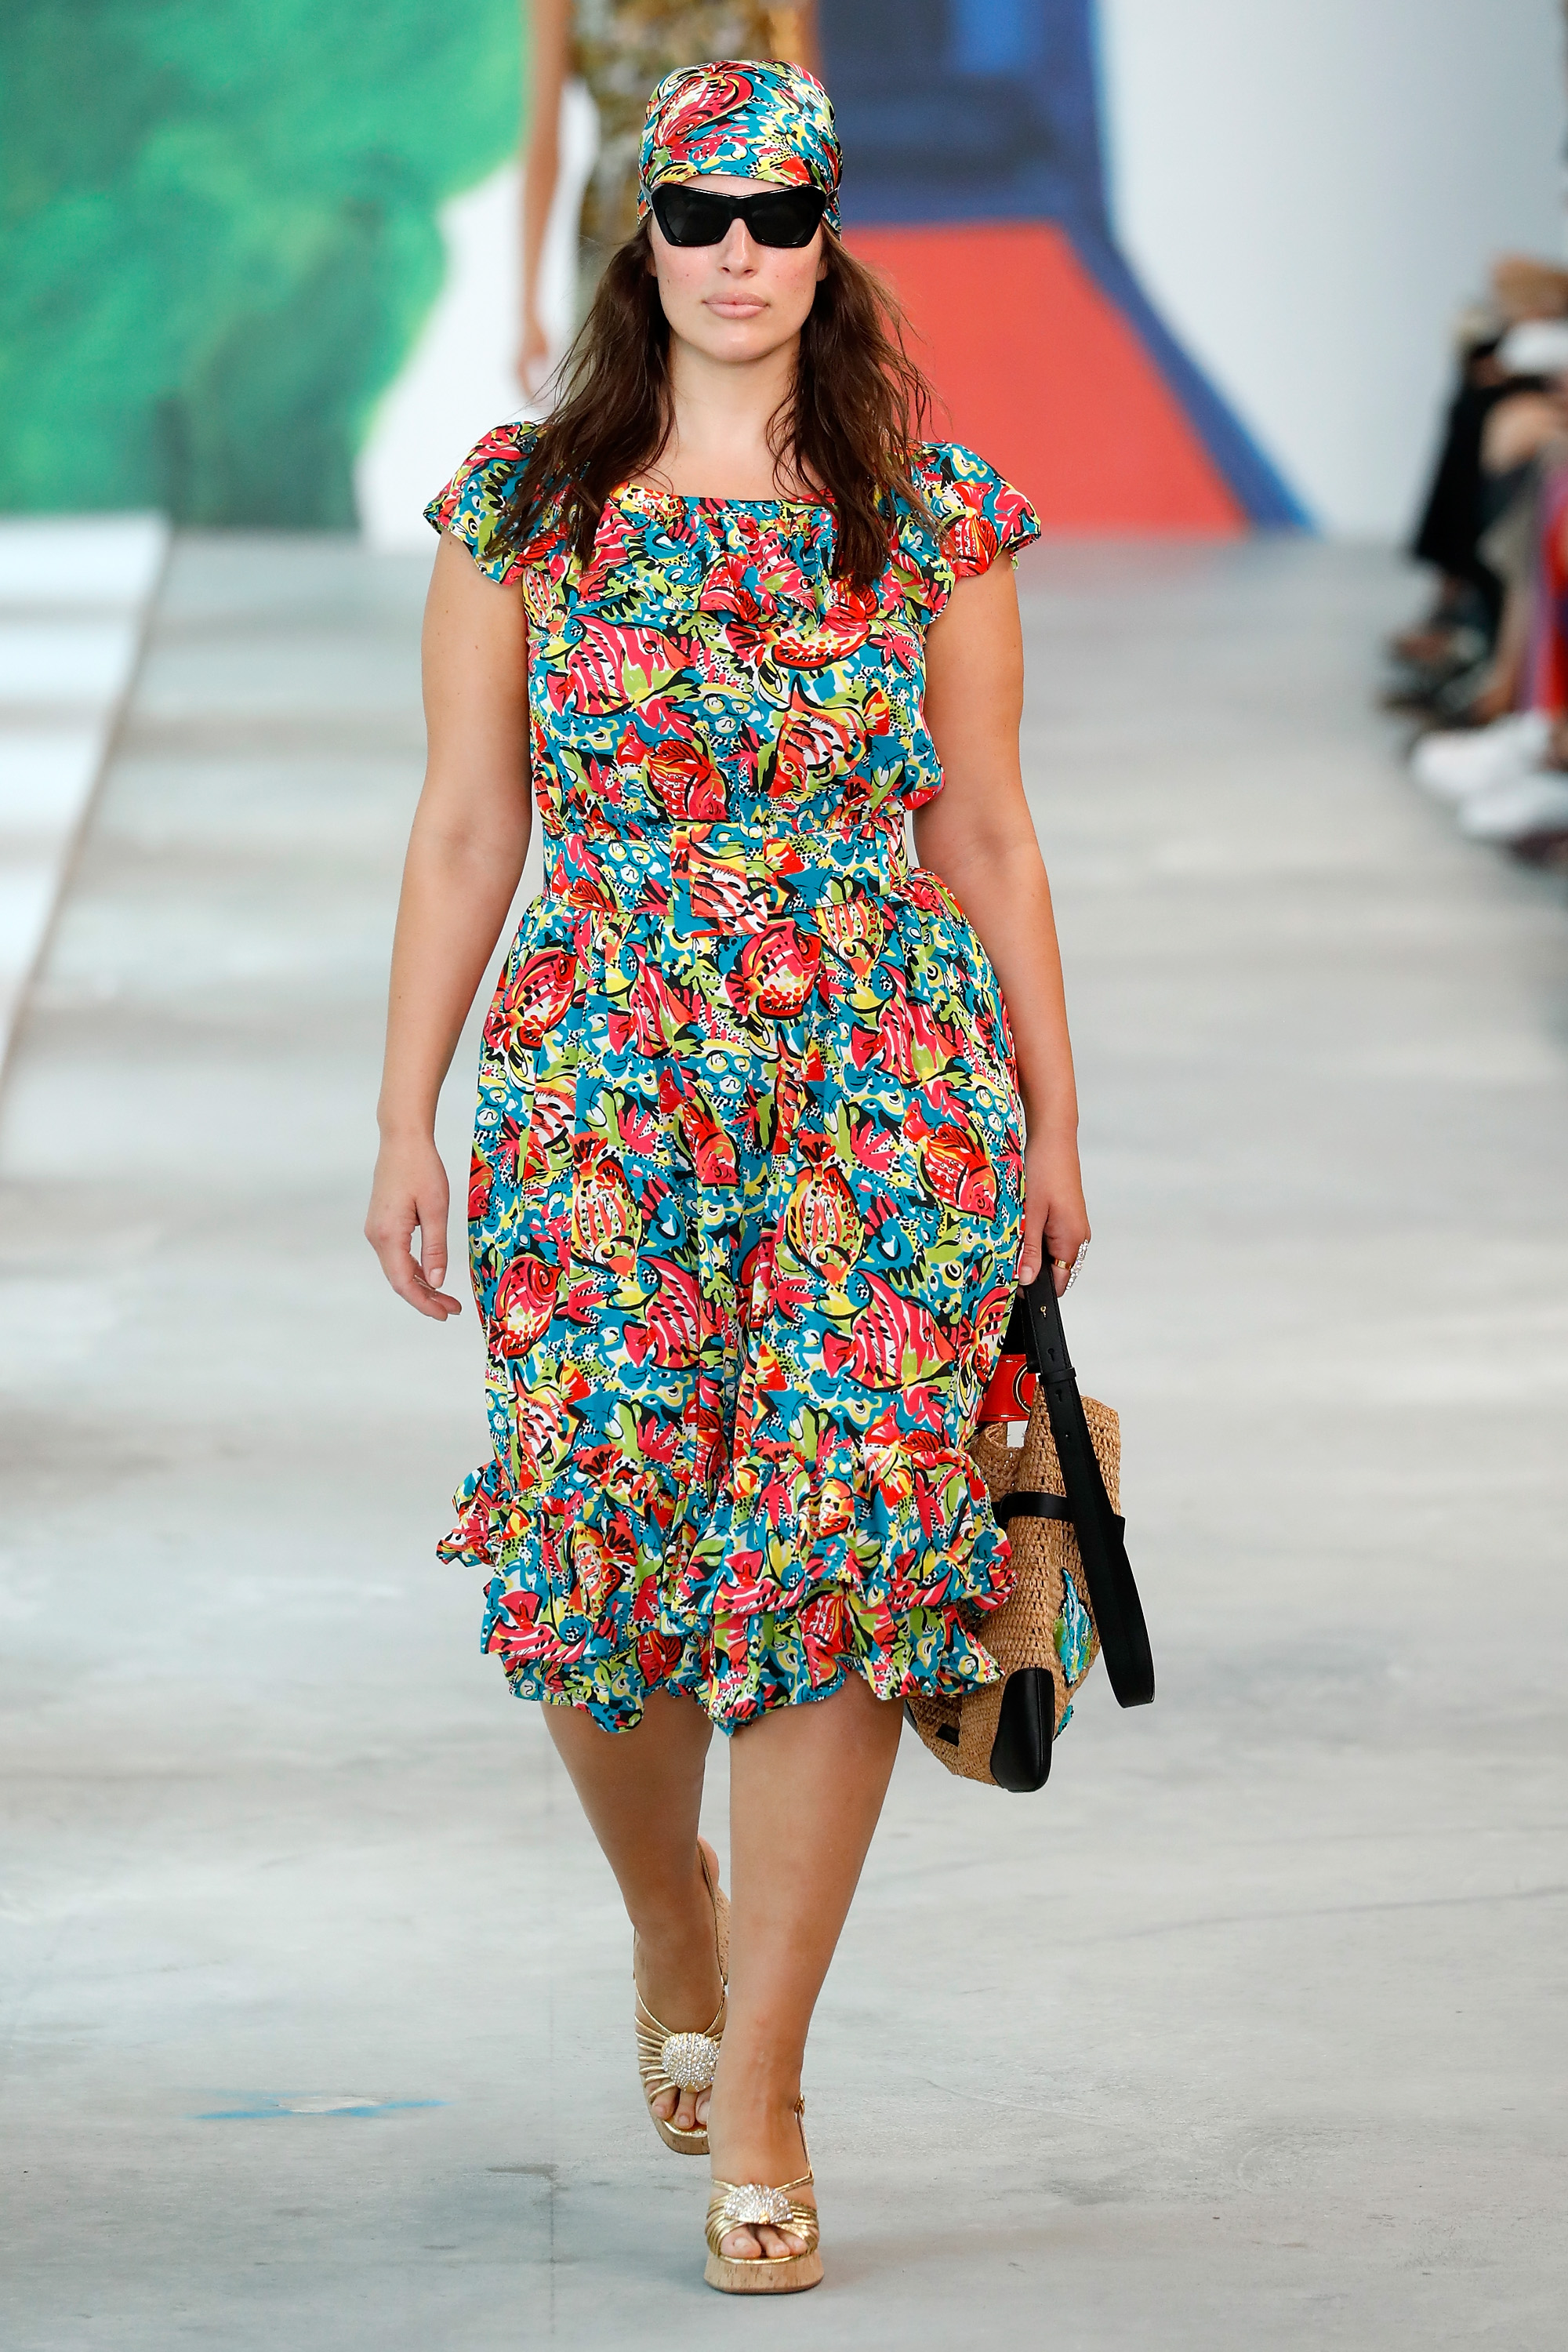 אשלי גרהאם צועדת בתצוגה של מייקל קורס בשבוע האופנה בניו יורק | צילום: Gettyimages